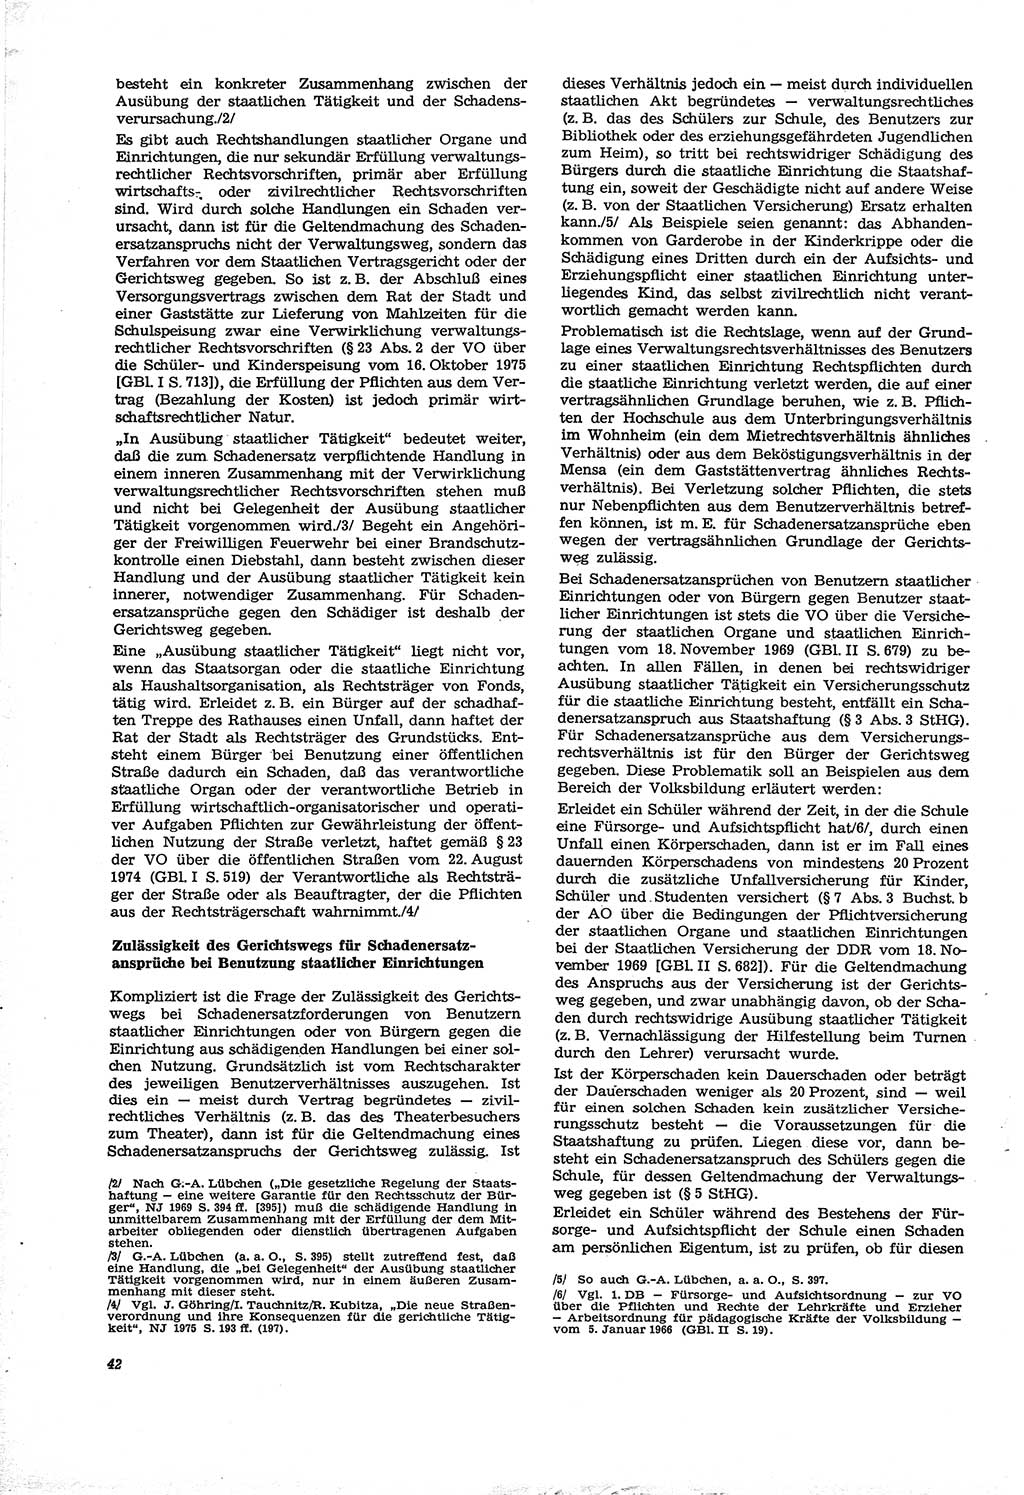 Neue Justiz (NJ), Zeitschrift für Recht und Rechtswissenschaft [Deutsche Demokratische Republik (DDR)], 30. Jahrgang 1976, Seite 42 (NJ DDR 1976, S. 42)